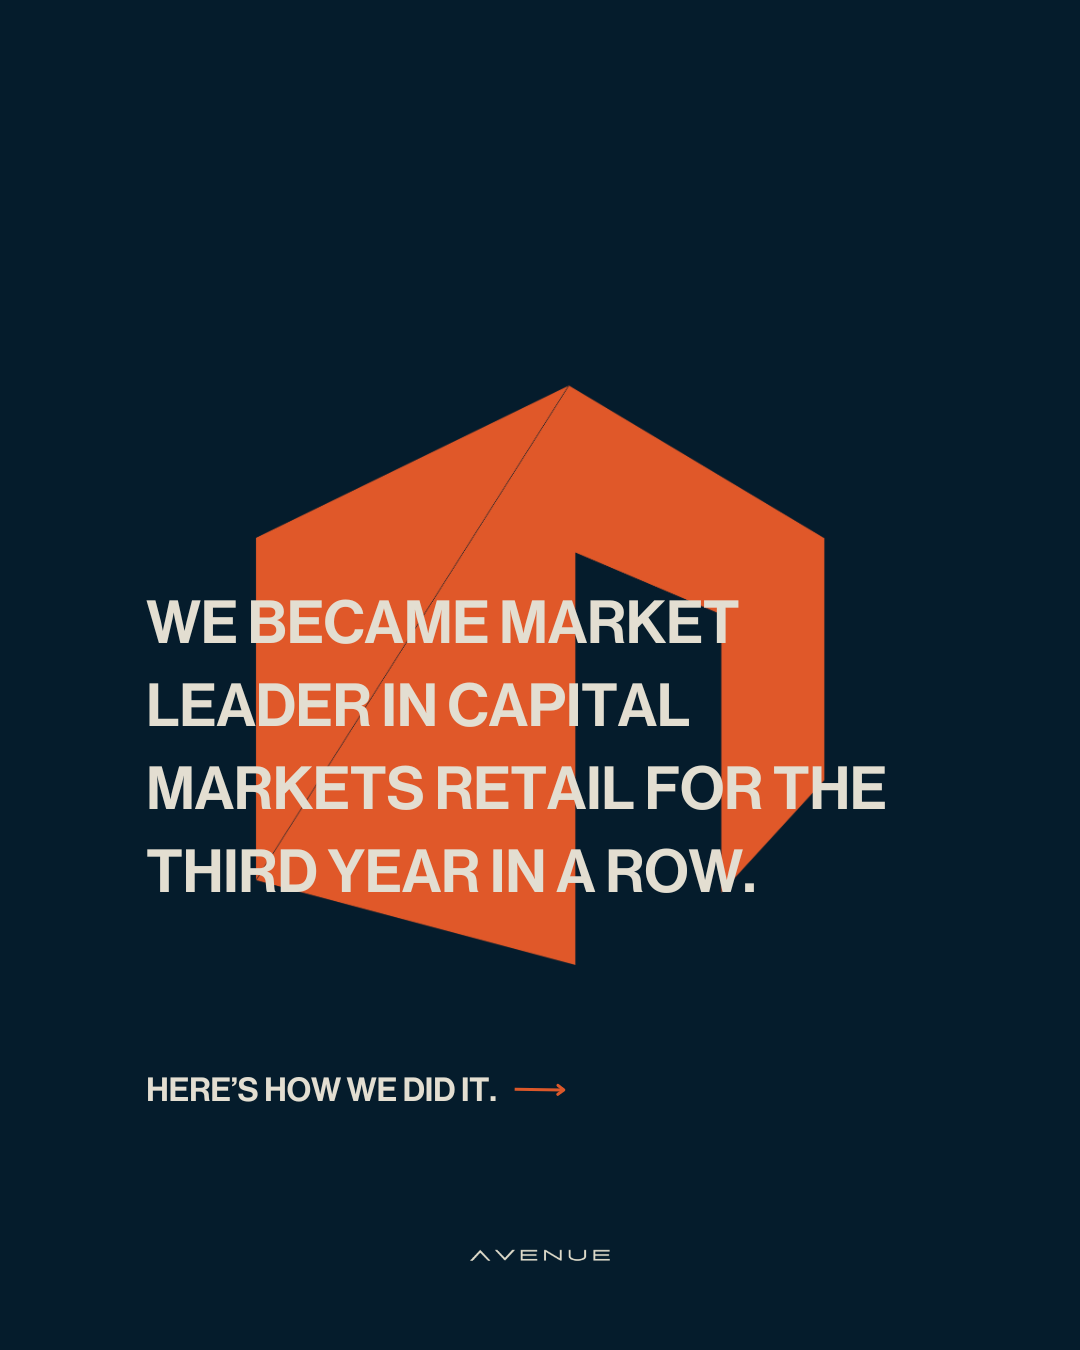 Avenue viert triomfantelijk driepunter als Belgische leider in retail op de kapitaalmarkten